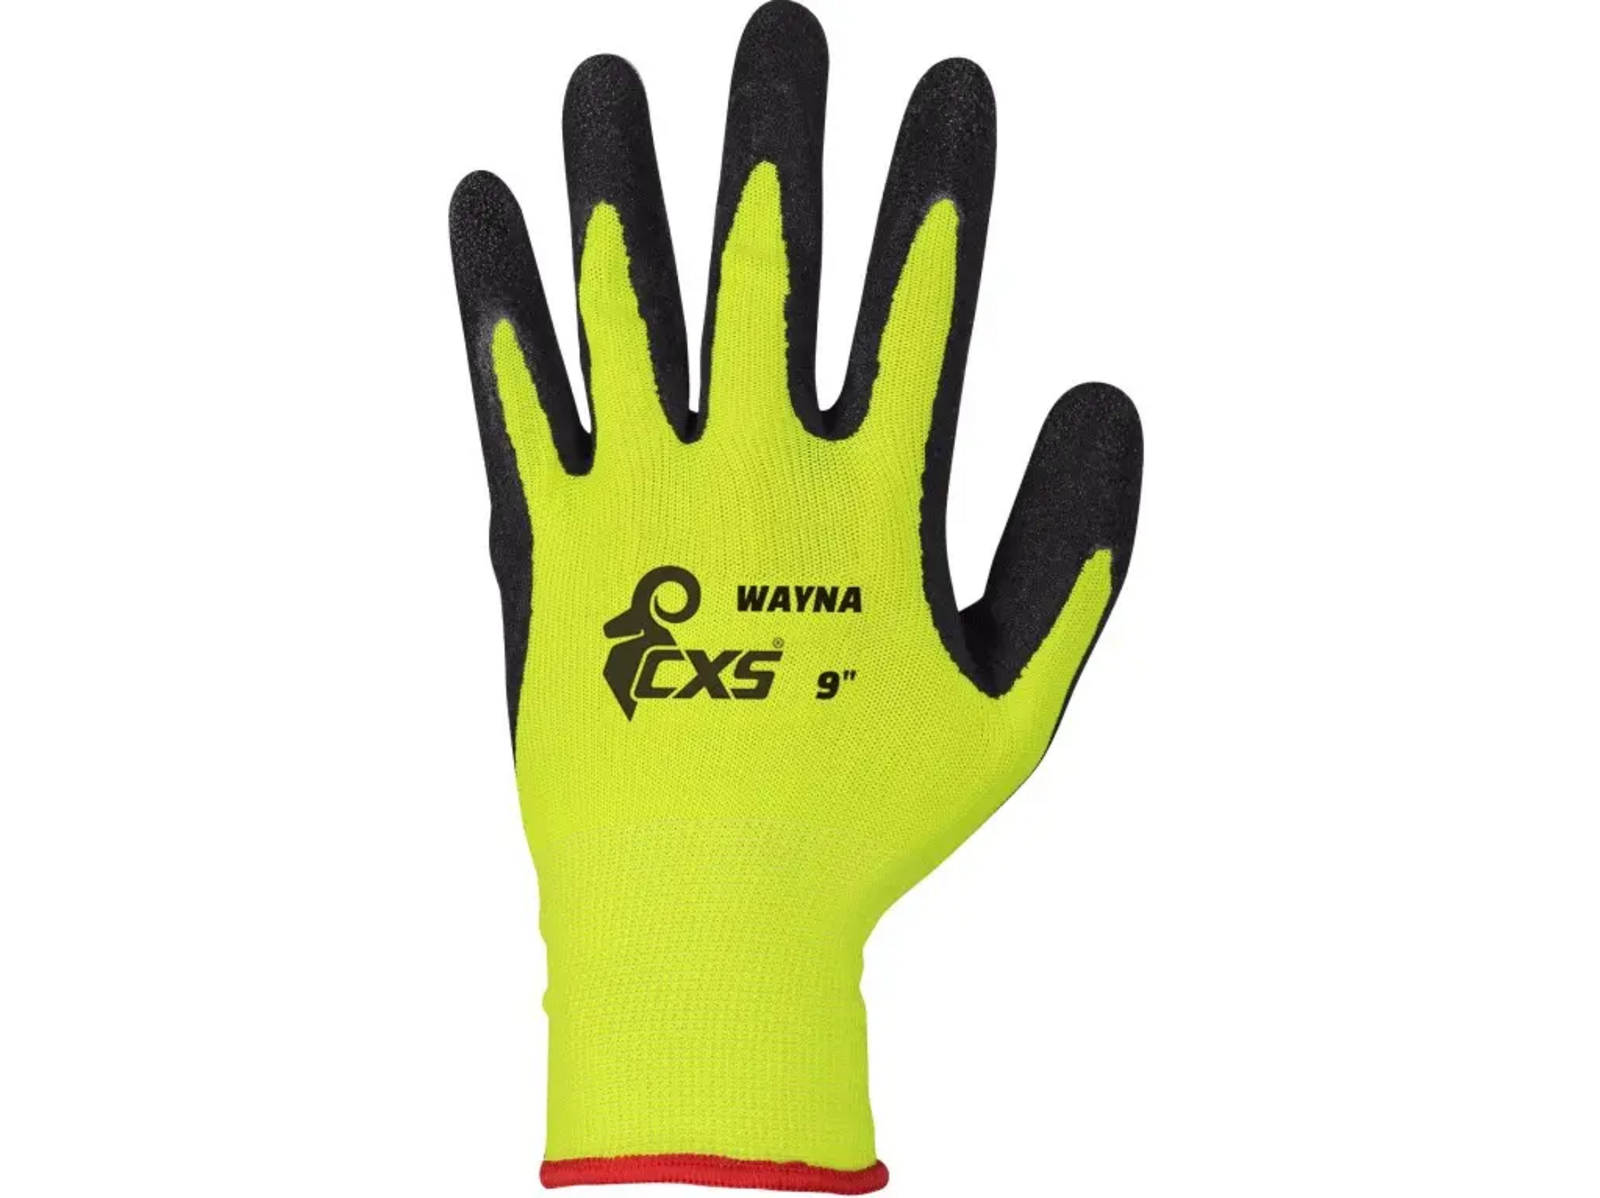 Povrstvené rukavice CXS Wayna - veľkosť: 8/M, farba: žltá/čierna